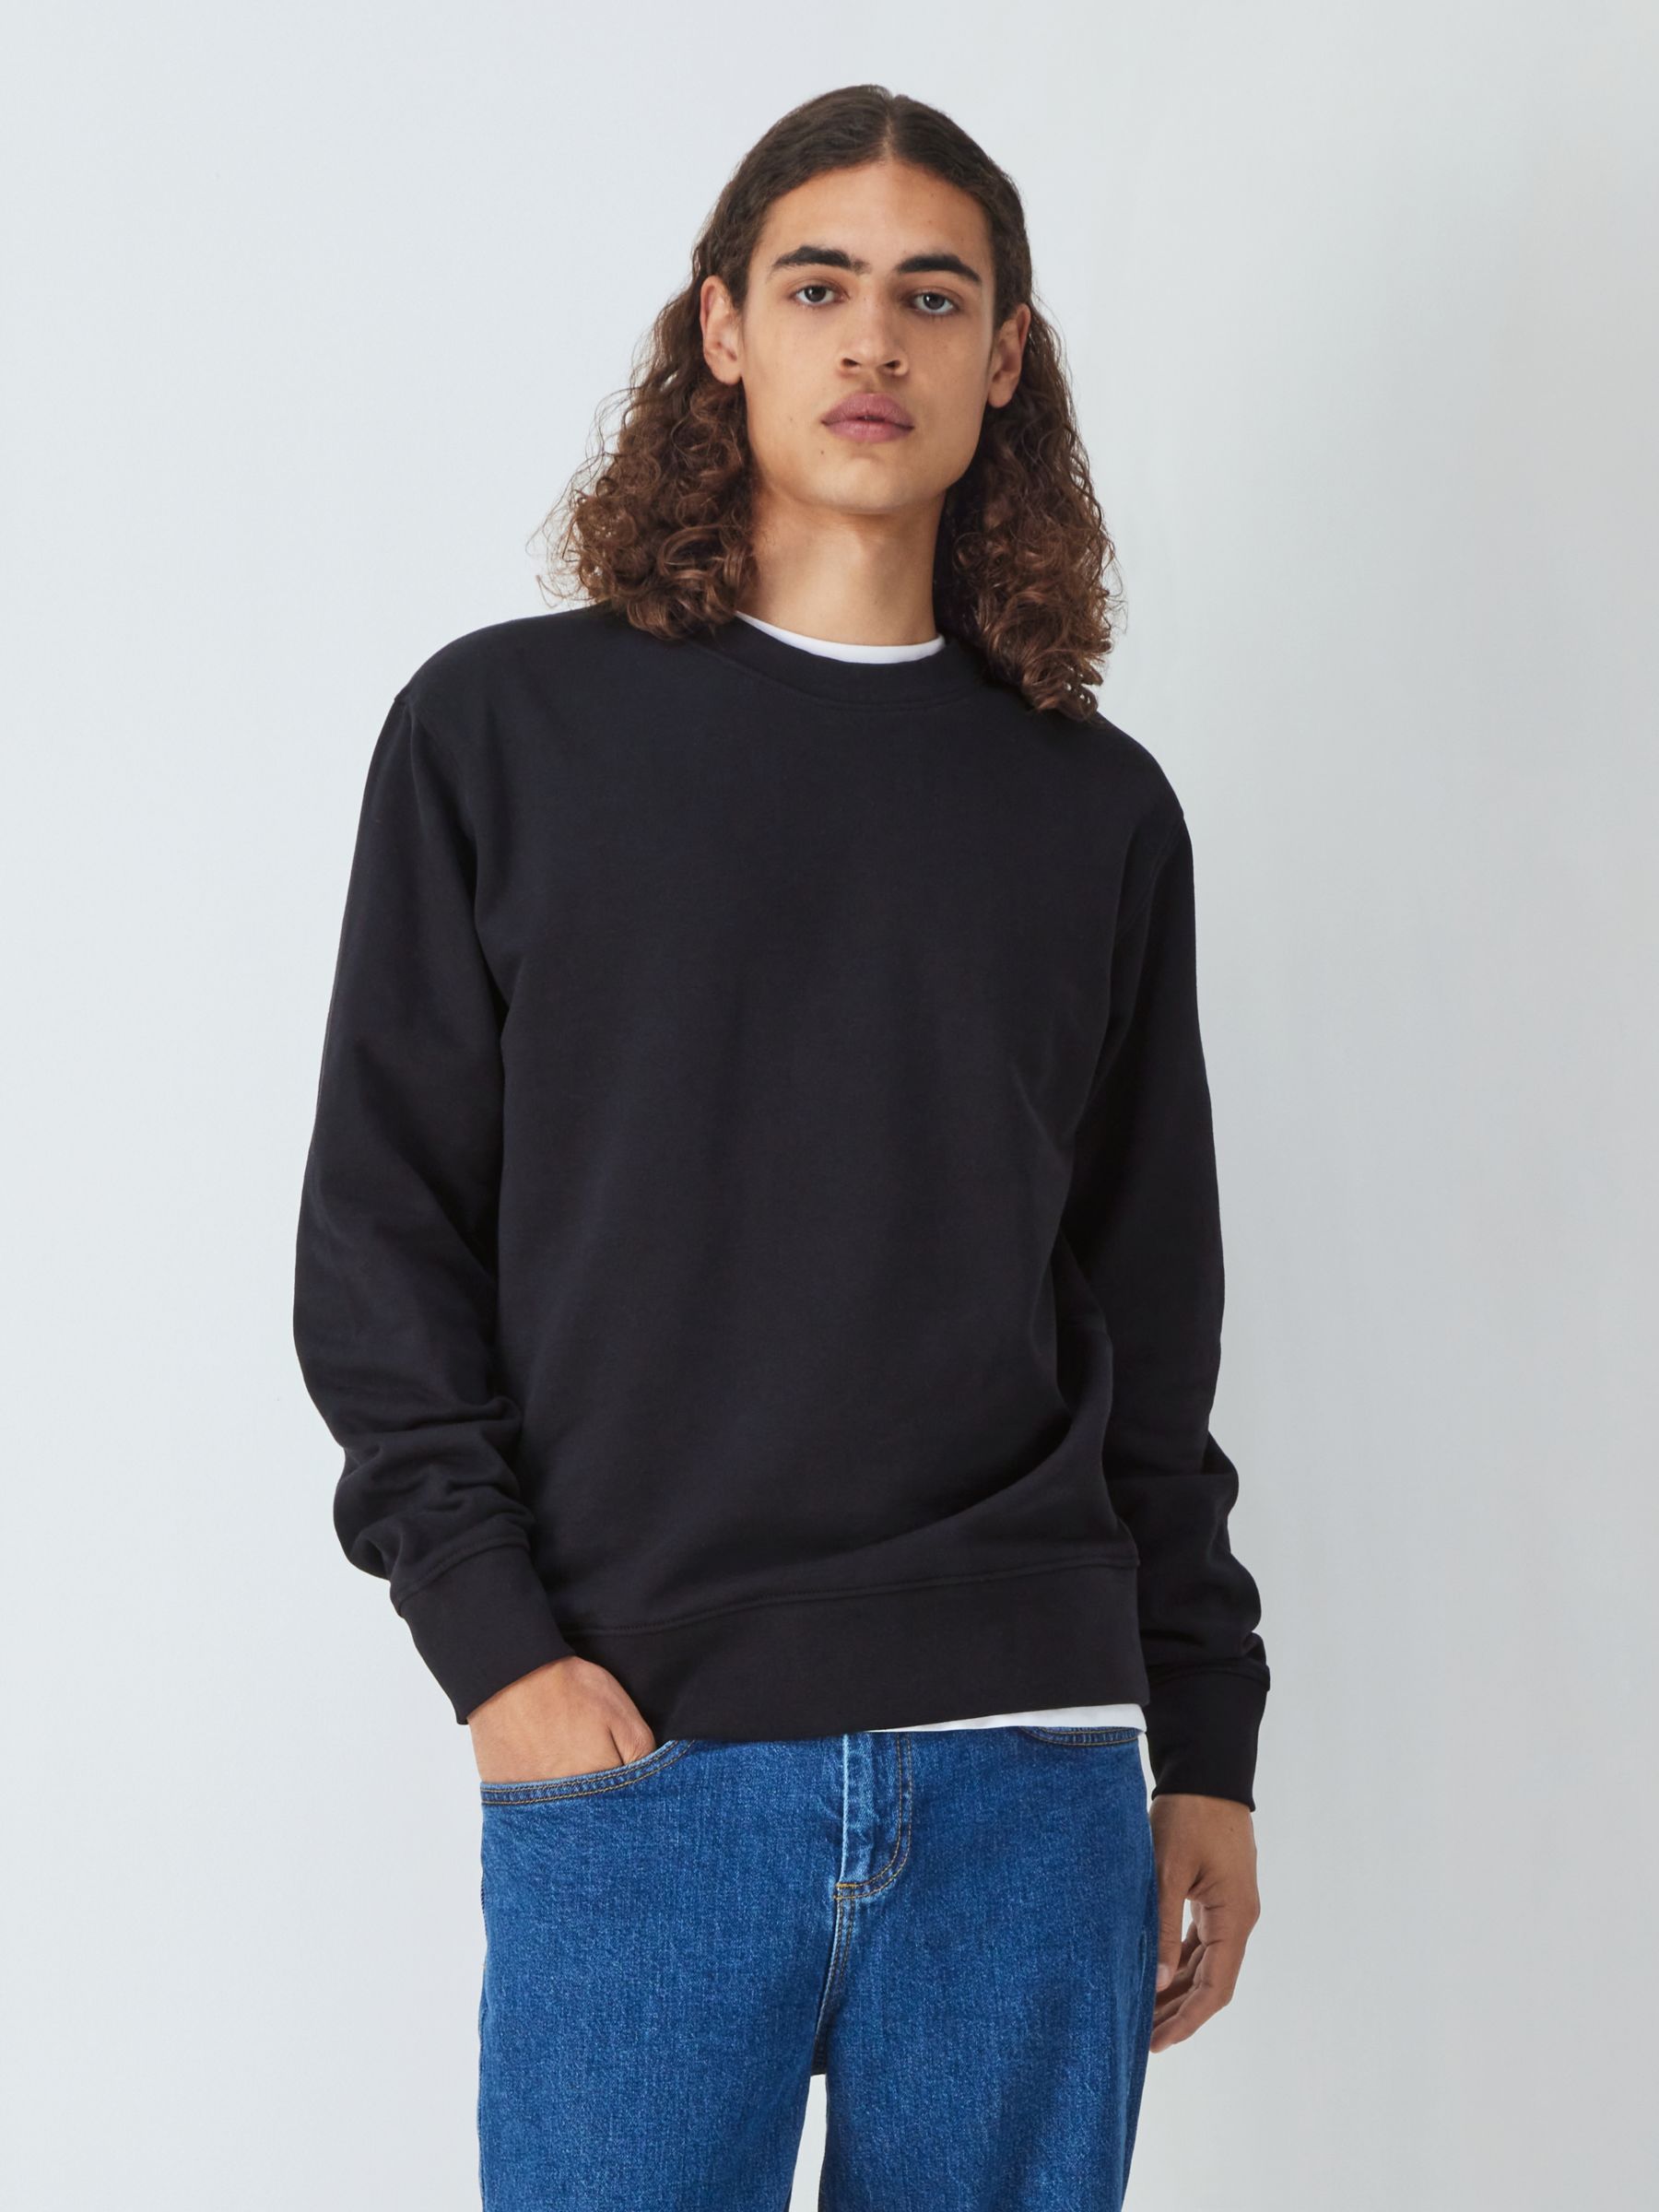 Men's Sweatshirts & Hoodies - Black, Cotton